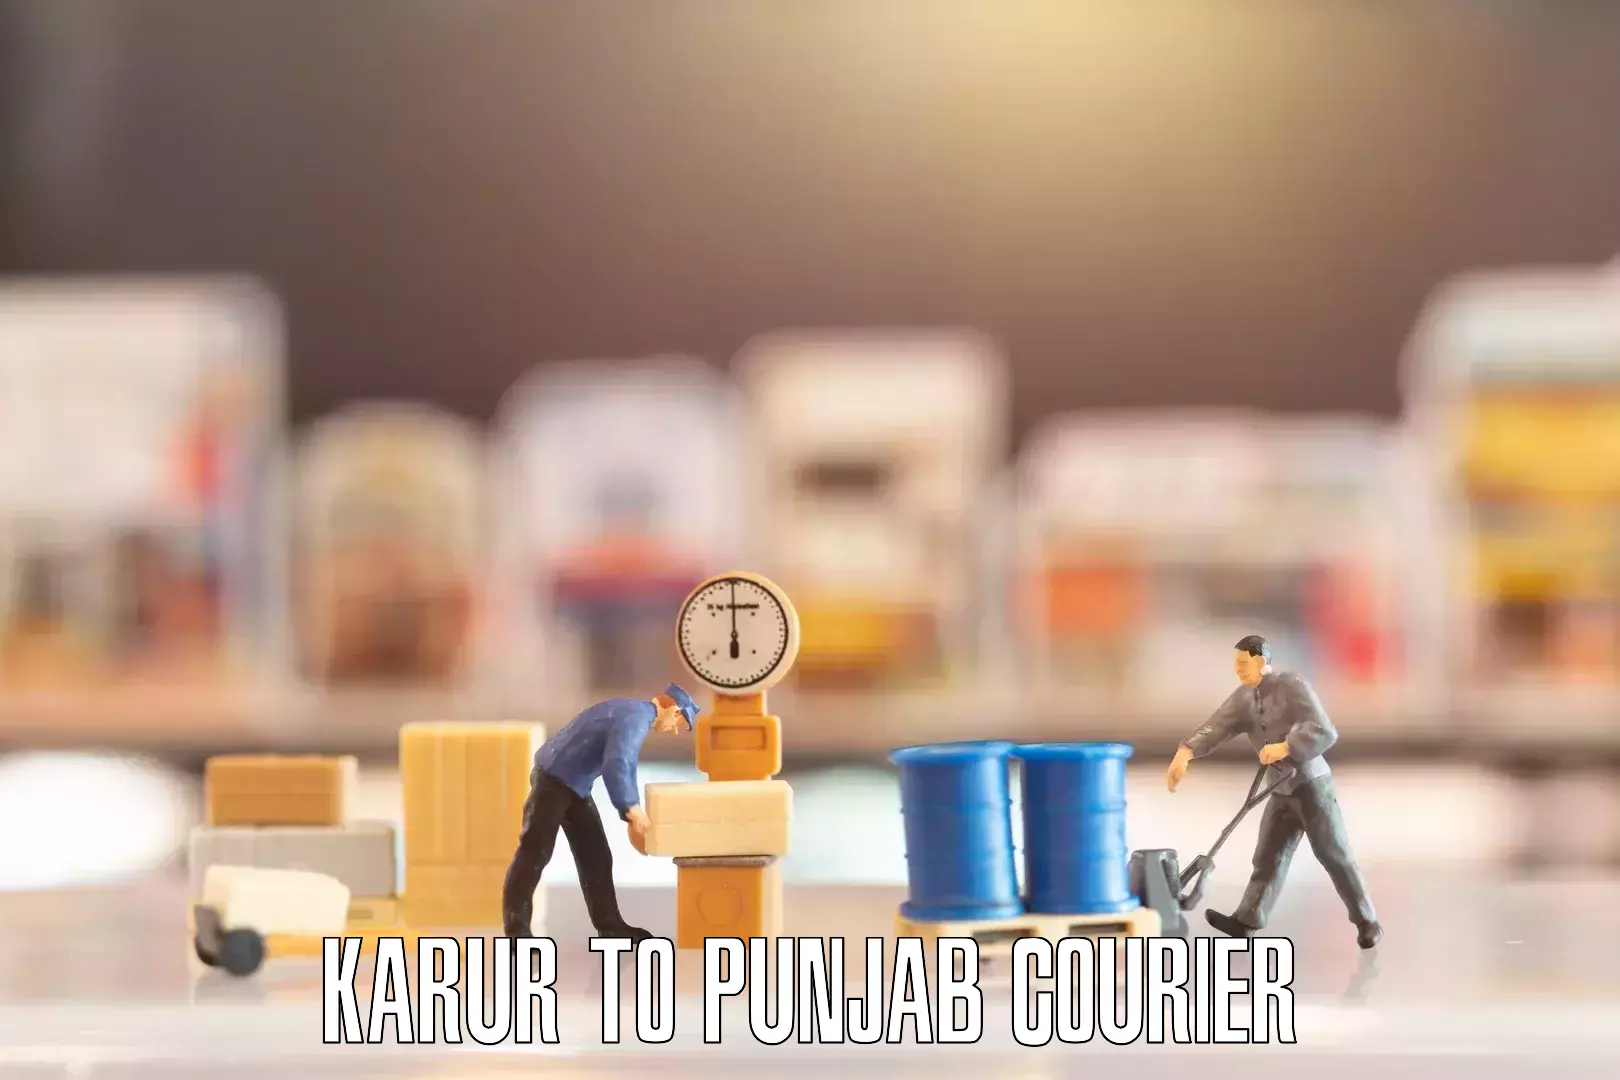 Furniture relocation experts Karur to Punjab